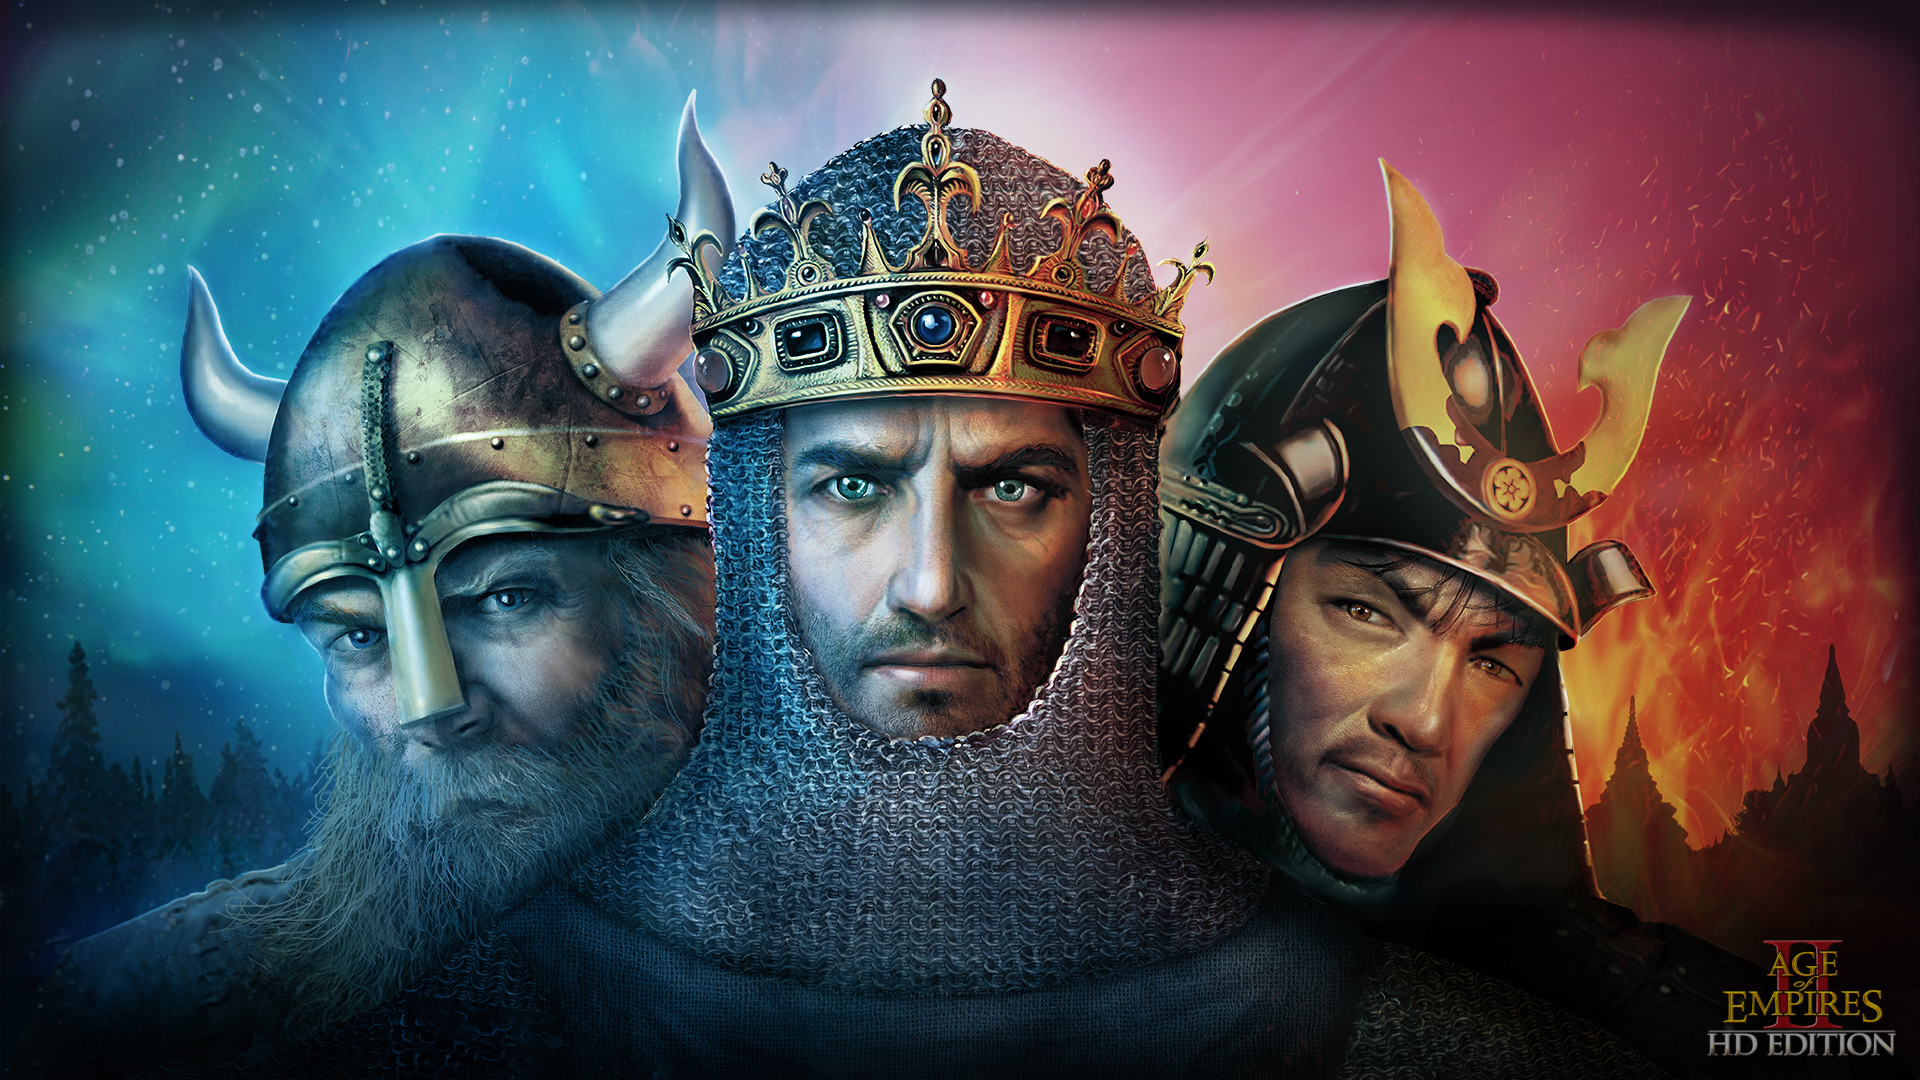 Age of Mythology 05 of Empires